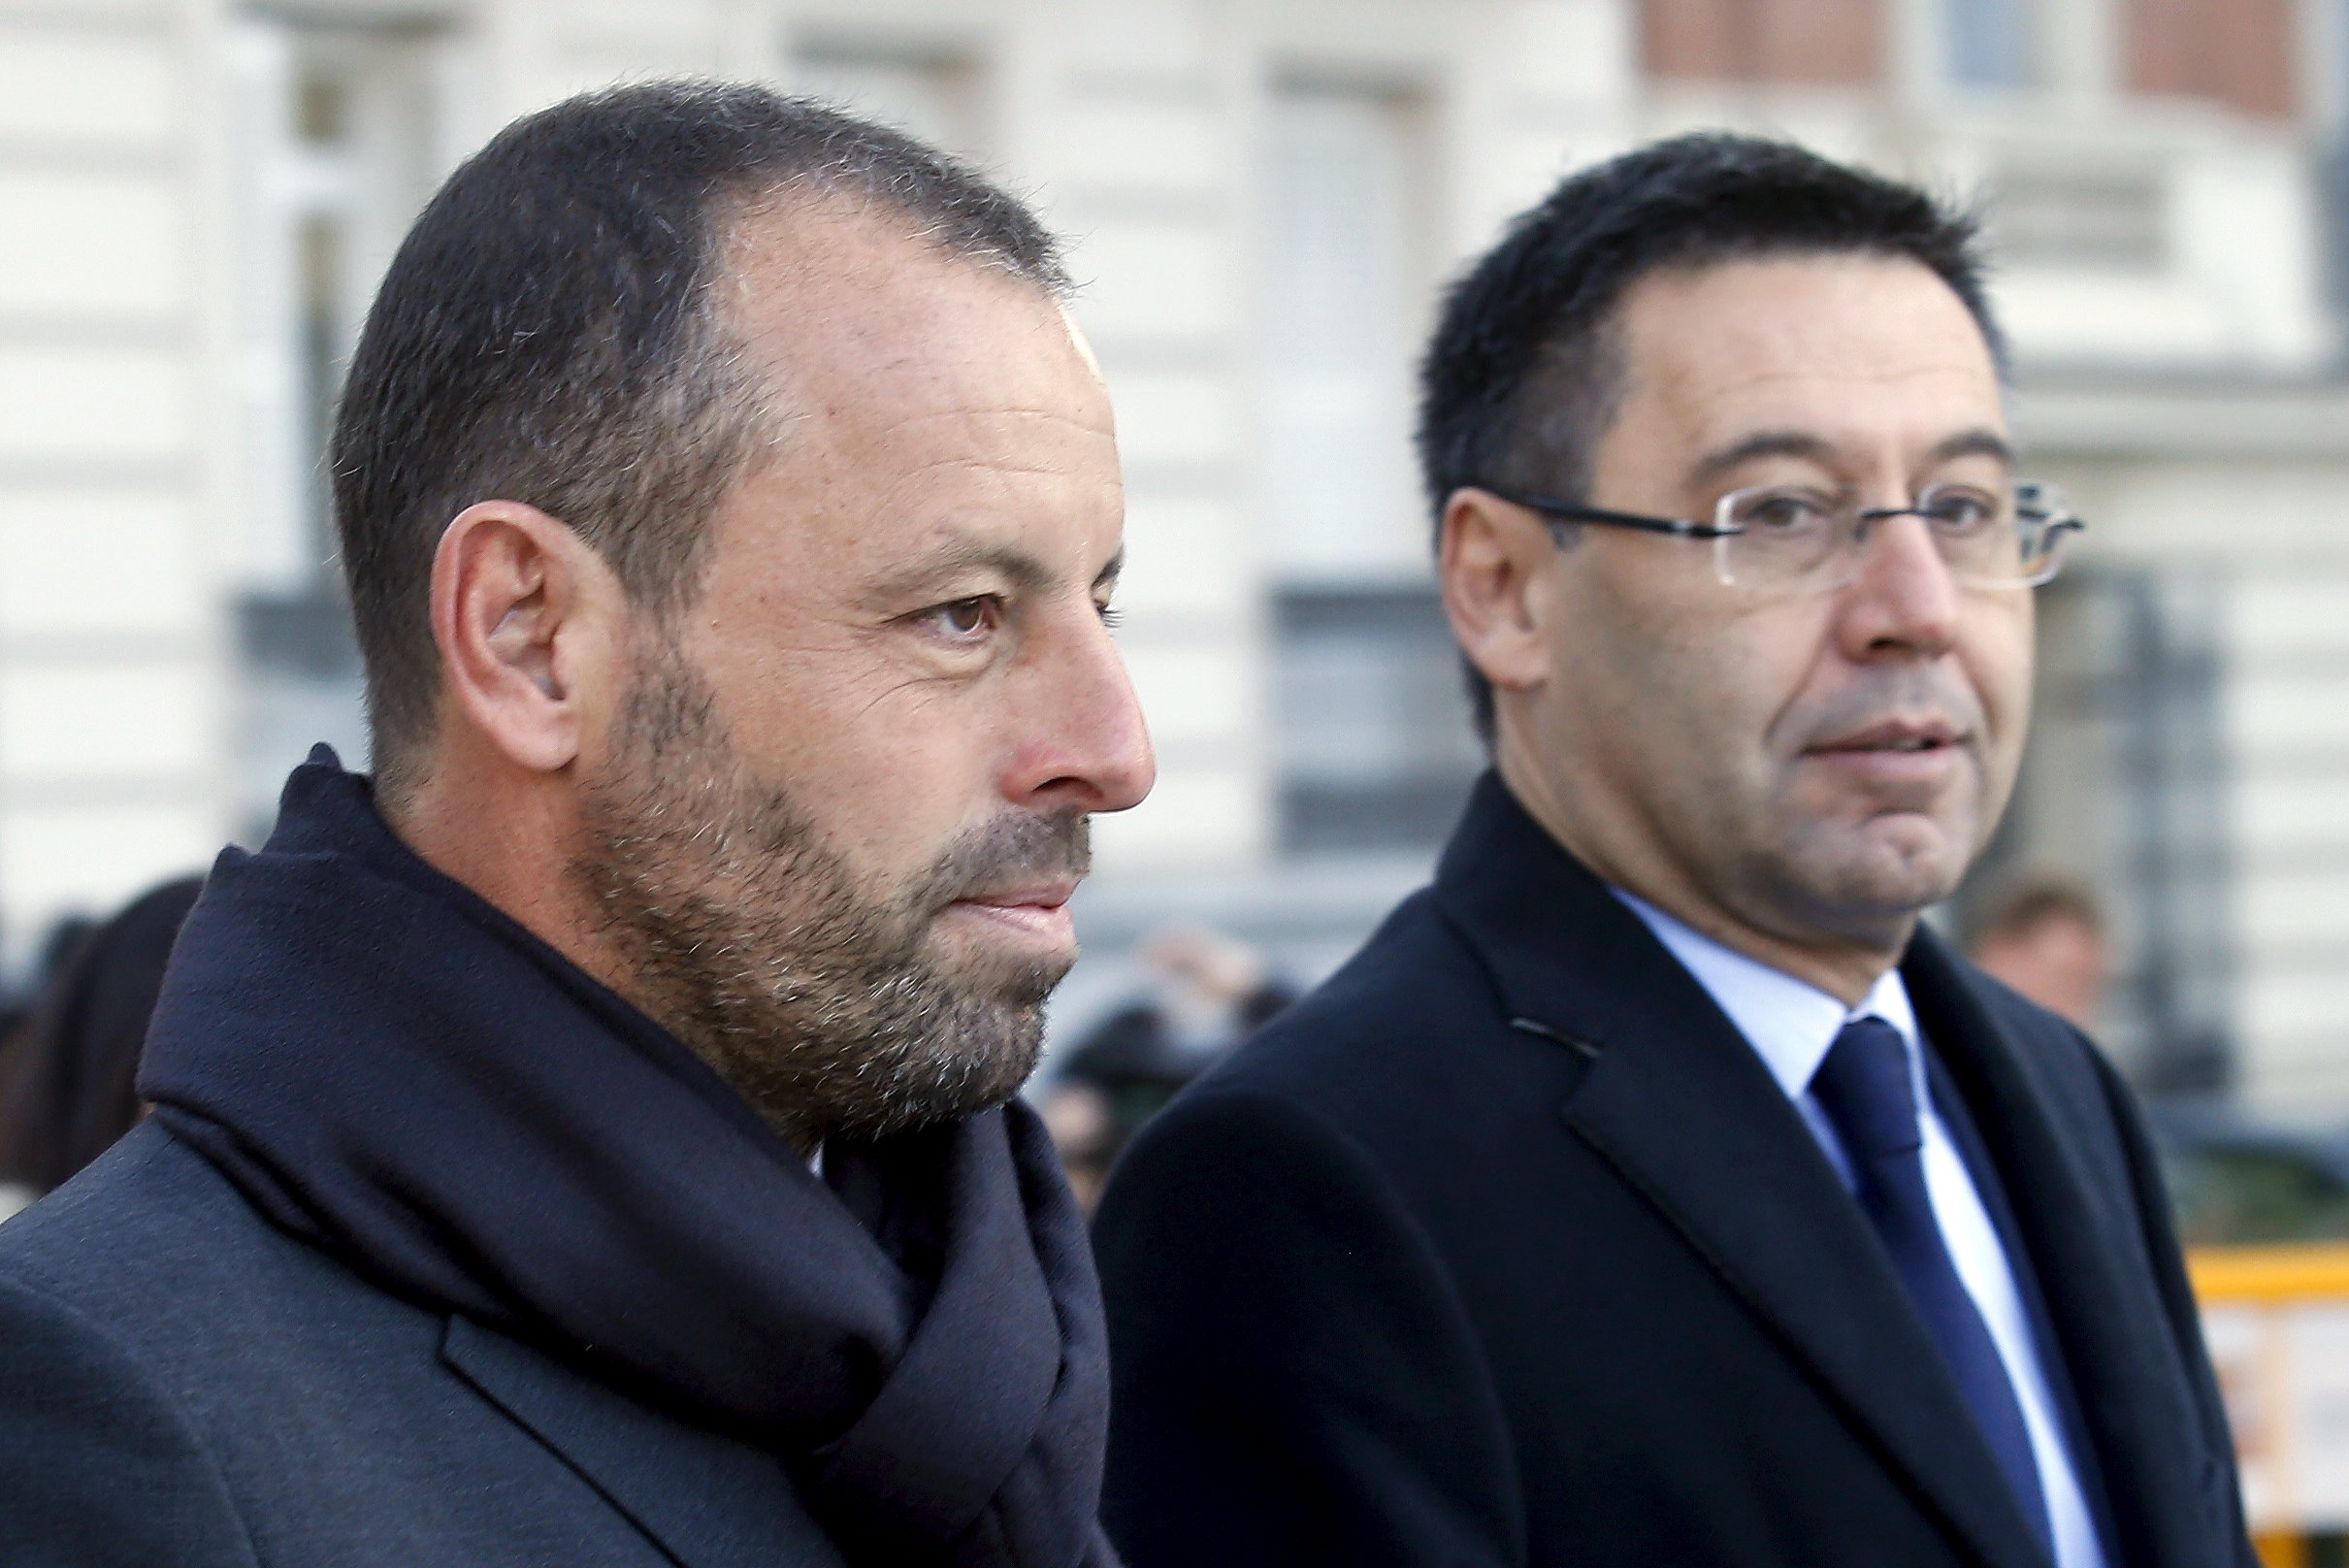 La Fiscalía cree que el pacto del Barça con Negreira fue para obtener favores arbitrales